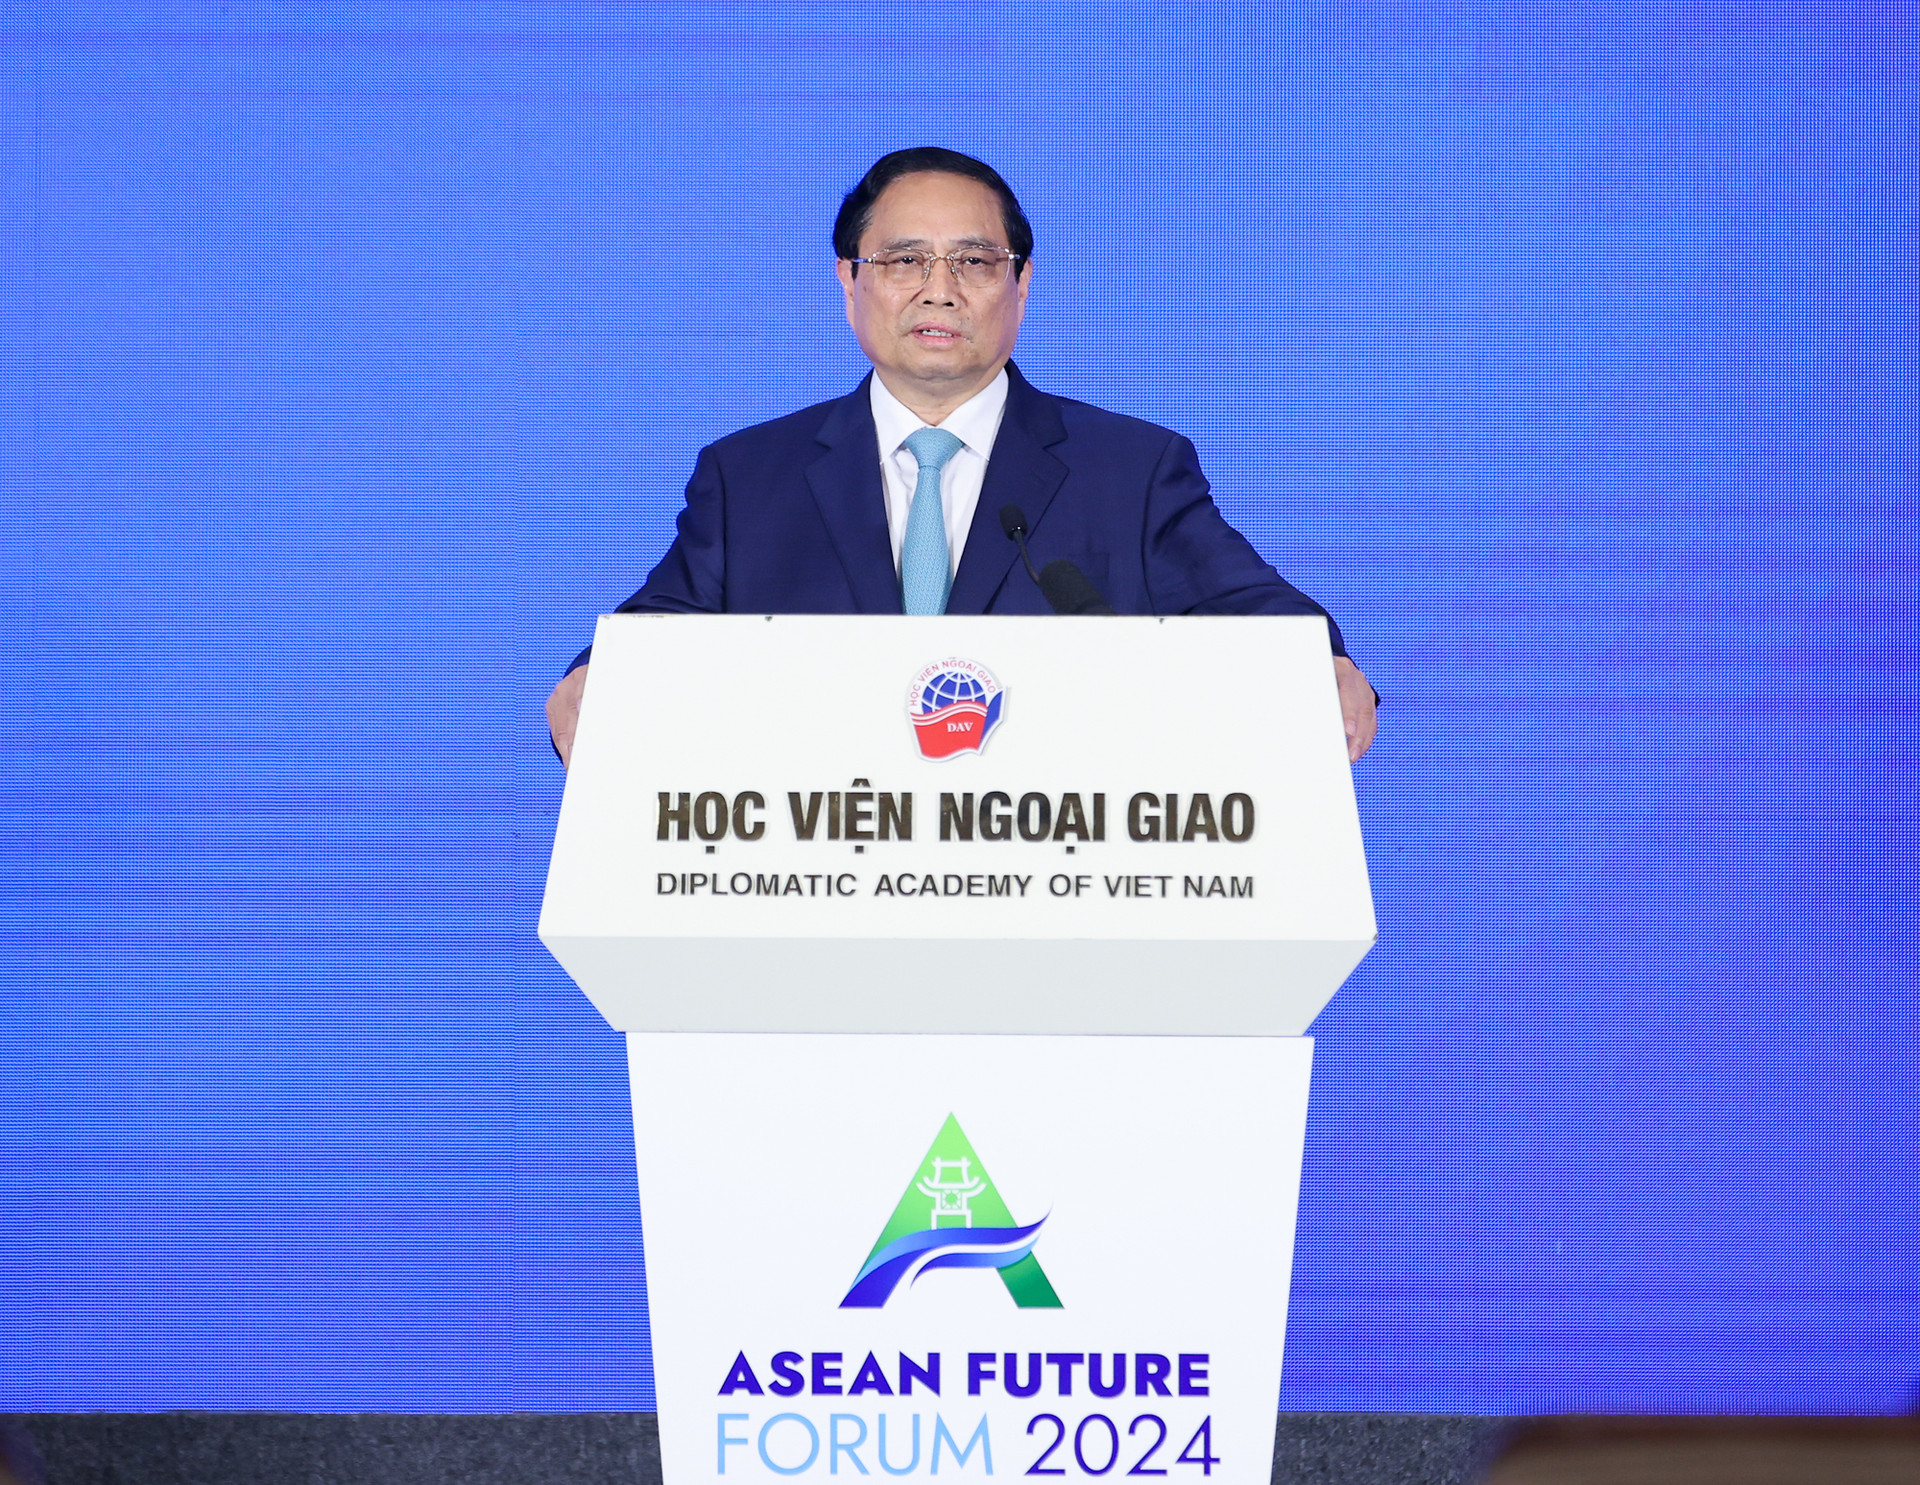 Vị thế và hình ảnh Việt Nam qua diễn đàn Tương lai ASEAN- Ảnh 1.